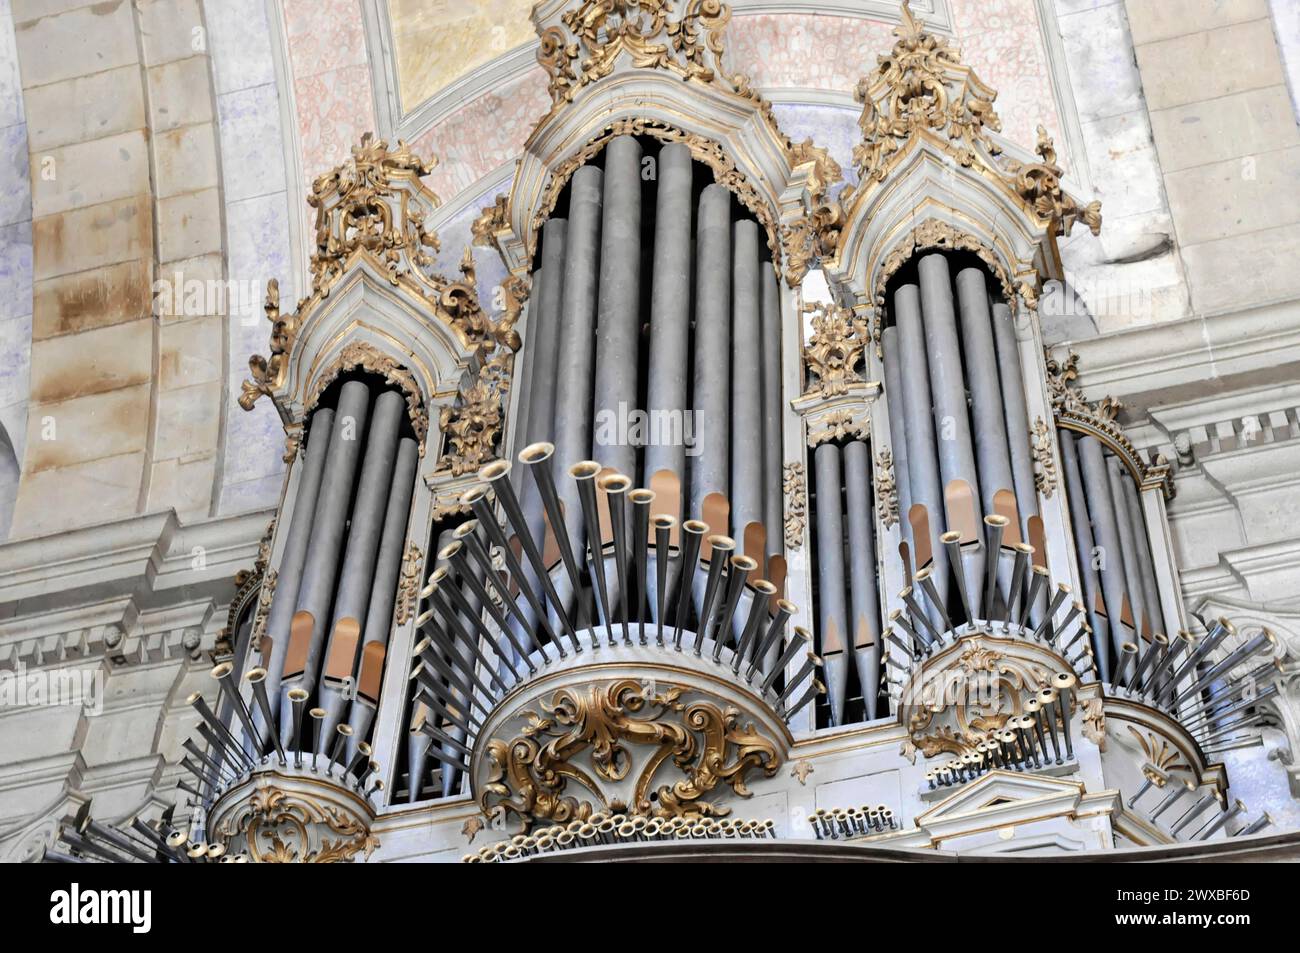 Orgue de l'église de pèlerinage Bom Jesus, lieu de pèlerinage, Braga, orgue opulent orné d'or avec une tuyauterie impressionnante dans une église, nord Banque D'Images